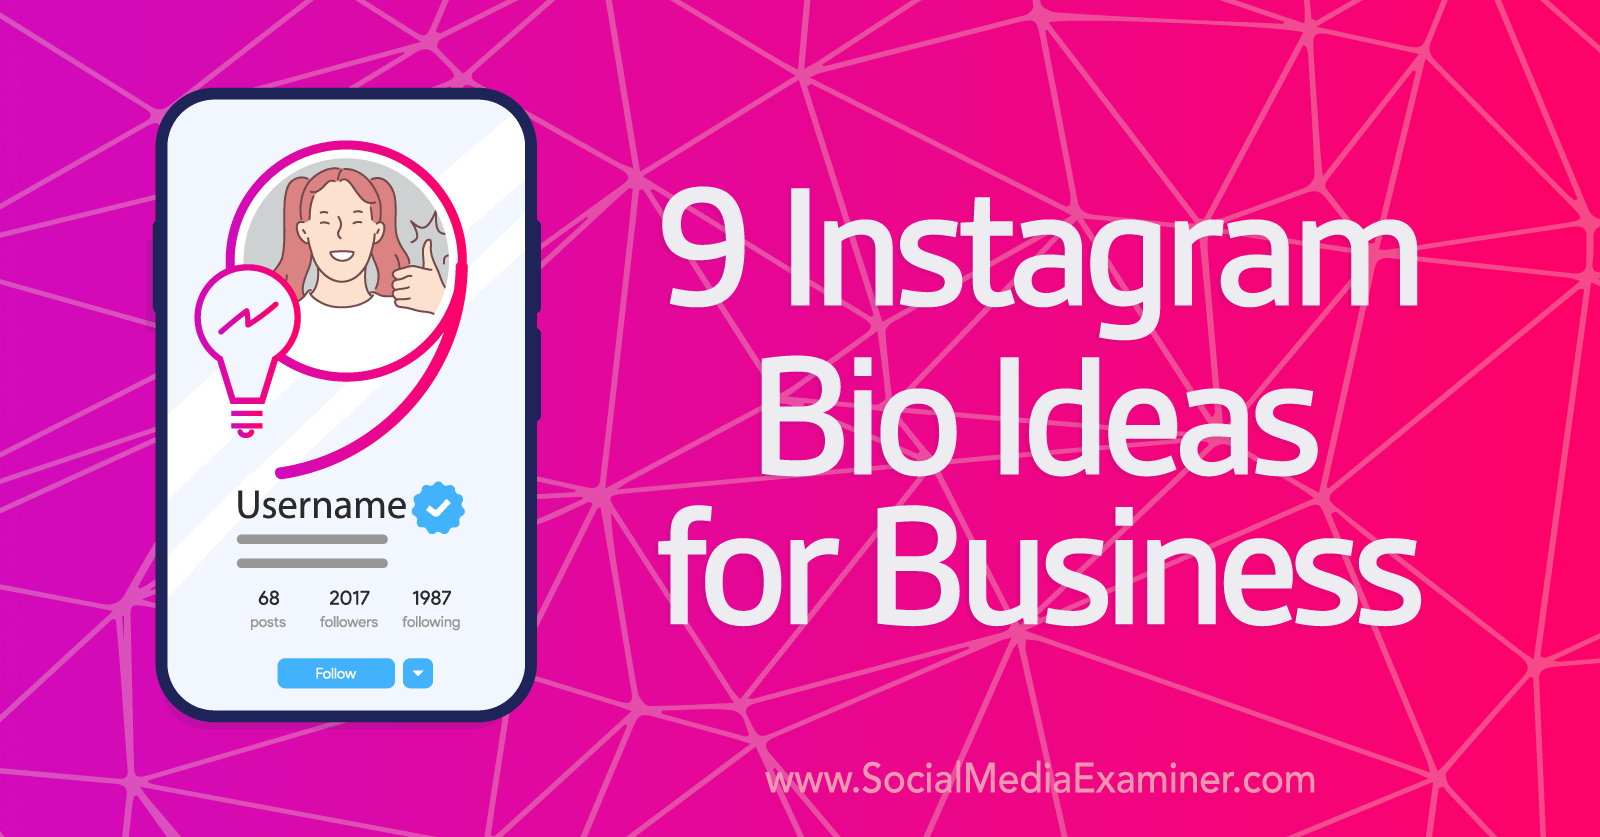 9 Instagram Bio Ideas for Business-Social Media Examiner